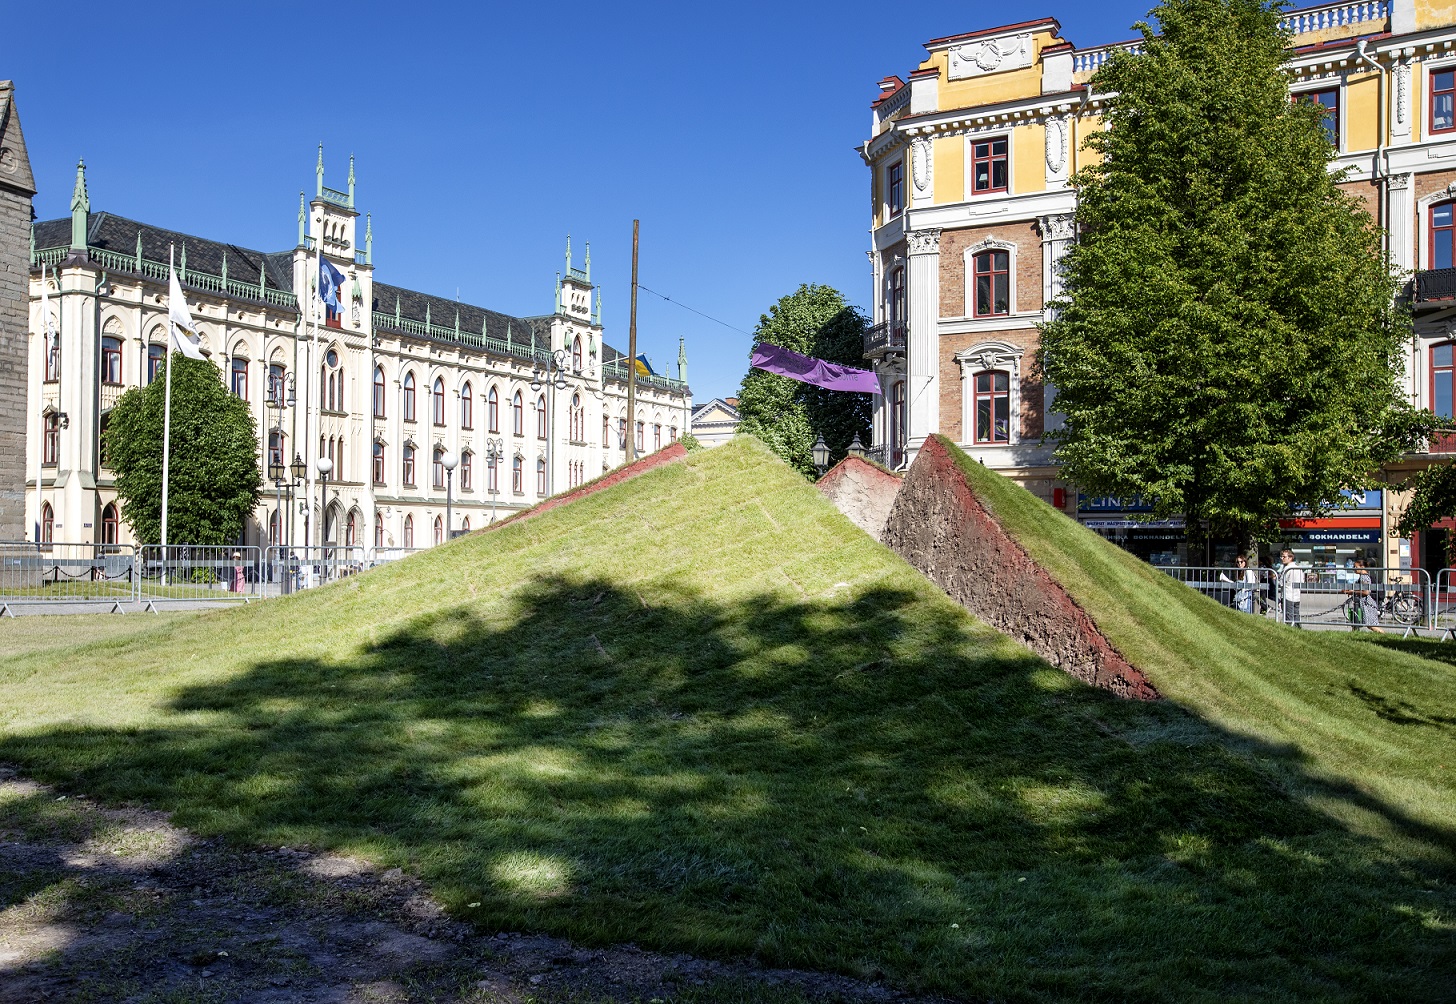 Gräsmattan framför Sankt Nicolai Kyrkan har öppnats upp som ett sår ur underjorden. Verket är uppbyggt av jord och gräs som bryter upp från marken i små pyramidformer som skapar ett hål i mitten. I bakgrunden syns rådhuset.